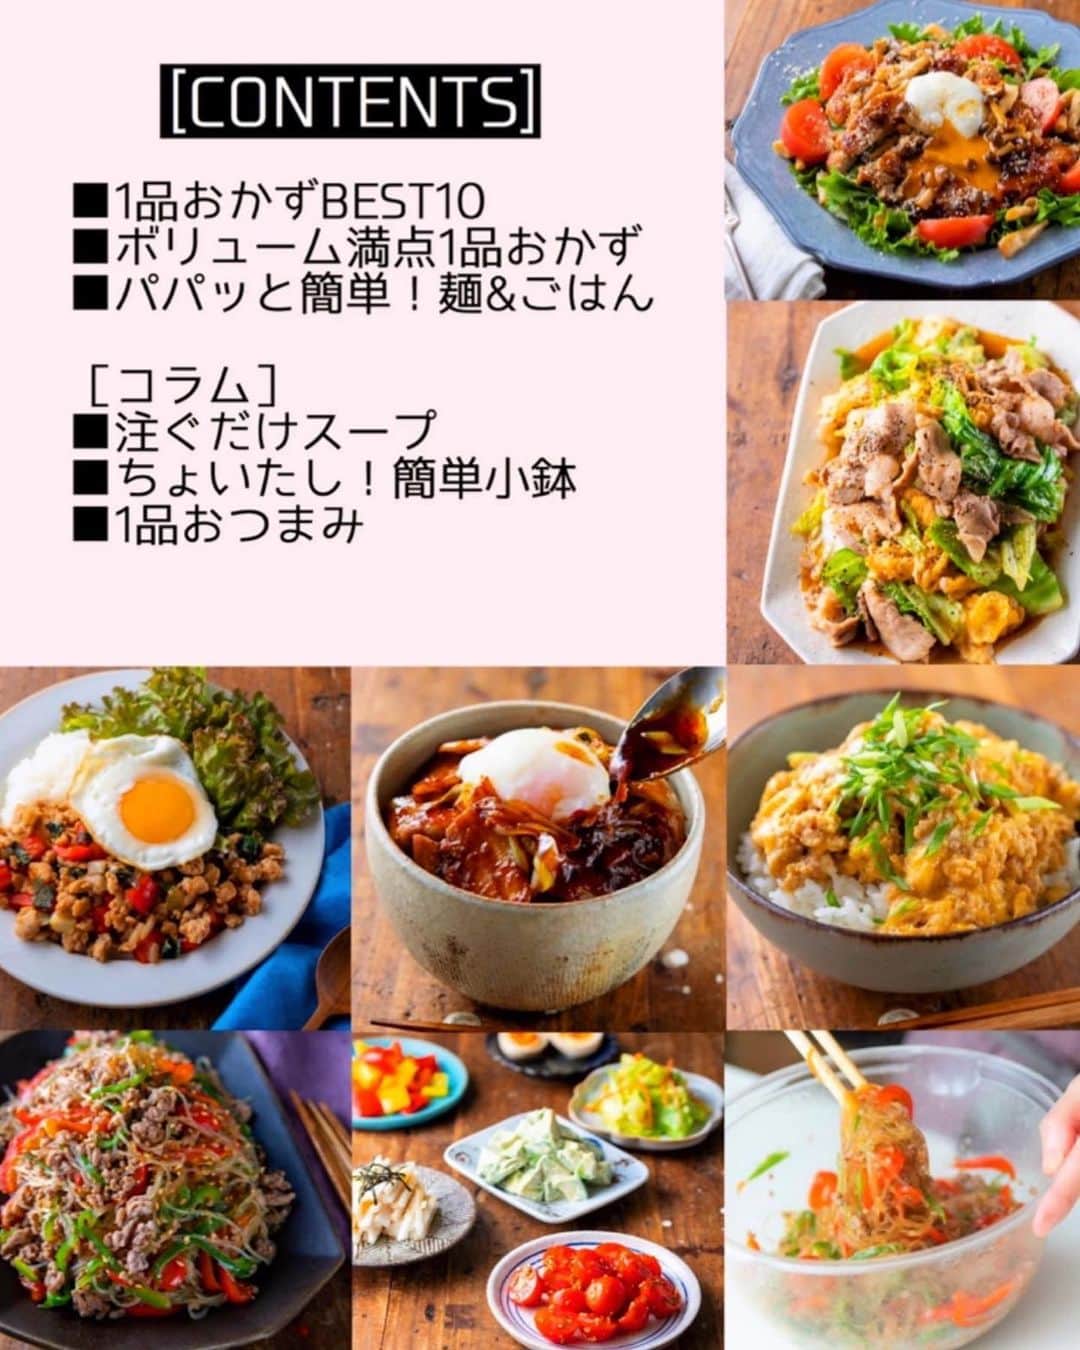 Mizuki【料理ブロガー・簡単レシピ】さんのインスタグラム写真 - (Mizuki【料理ブロガー・簡単レシピ】Instagram)「・﻿ 【#レシピ 】ーーーーーー﻿ ♡旨辛キムチ鍋♡﻿ ーーーーーーーーーーーー﻿ ﻿ ﻿ おはようございます(*^^*)﻿ ﻿ 今日ご紹介させていただくのは﻿ \\ピリっと旨辛キムチ鍋 //﻿ 市販の素を使わなくても﻿ おうちで簡単に作れますよ〜♩﻿ 旨味たっぷりのスープで﻿ お肉も野菜もたっぷり食べられます♡﻿ ﻿ 今回使用した具は一例なので﻿ お好みのものでアレンジOK！﻿ コチュジャンがなければ﻿ 味噌を増やすだけでもおいしいですよ♩﻿ (私は辛いものが苦手なので﻿ 溶き卵につけて食べたのですが﻿ これがとってもおいしかった😳❣️)﻿ ﻿ ラーメン、雑炊、うどんなど﻿ シメもお楽しみ下さいね(*^^*)﻿ ﻿ ﻿ ﻿ ＿＿＿＿＿＿＿＿＿＿＿＿＿＿＿＿＿＿＿＿﻿ 【3人分くらい】﻿ 豚バラ薄切り肉...200g﻿ ニラ...1/2束﻿ 長ねぎ...1本﻿ 白菜...200g﻿ しいたけ...4枚﻿ 豆腐...1/2丁﻿ キムチ...200g ﻿ ごま油...小2﻿ ●水...600ml﻿ ●味噌...大2﻿ ●コチュジャン...大1﻿ ●鶏がらスープ・醤油...各小2﻿ ﻿ 1.豚肉とニラは4cm長さに切る。長ねぎは斜め1cm幅に切る。白菜はざく切りにする。しいたけと豆腐は食べやすい大きさに切る。﻿ 2.鍋にごま油を中火で熱し、豚肉とキムチを炒める。豚肉に火が通ったら●を加えて混ぜ、煮立ったらニラ以外の残り材料を加えて5〜6分煮る。﻿ 3.仕上げにニラを加えてさっと煮る。﻿ ￣￣￣￣￣￣￣￣￣￣￣￣￣￣￣￣￣￣￣￣﻿ ﻿ ﻿ ﻿ 《ポイント》﻿ ♦︎豆腐は絹、木綿、焼き豆腐、どれでもOK！キャベツ、えのき、もやし、小松菜、油揚げ、厚揚げ、市販の餃子を入れても合います♩﻿ ♦︎24cmのお鍋を使用しています♩﻿ ﻿ ﻿ ﻿ ﻿ ﻿ ﻿ ﻿ 昨日は新刊に沢山のご予約をいただき﻿ 誠にありがとうございました😭💕﻿ 予想を上回る反響をいただき﻿ チーム一同喜んでおります（ ; ; ）✨﻿ 私も久しぶりに安心して眠れました🥺﻿ ﻿ ↓ ↓ ↓﻿ ﻿ 📕新刊予約開始しました📕﻿ 【ラクしておいしい！#1品晩ごはん 】﻿ ￣￣￣￣￣￣￣￣￣￣￣￣￣￣￣￣￣﻿ 私たちだってヘトヘトな日がある•••﻿ 毎日何品も作っていられない•••﻿ もうごはんに悩みたくない😢﻿ そう思うことってありませんか？﻿ そんな時、1品ごはんはいかがでしょう？﻿ というご提案です✨﻿ ﻿ ﻿ 【1品ごはん】は﻿ 副菜いらずで全てがシンプル！﻿ ￣￣￣￣￣￣￣￣￣￣￣￣￣￣￣￣￣￣﻿ 一品つくるだけでいいから﻿ 献立を考えなくてよし！﻿ ￣￣￣￣￣￣￣￣￣￣￣￣￣￣￣￣￣￣﻿ 悩まない、疲れない、﻿ 気力や時間がなくてもなんとかなる！﻿ ￣￣￣￣￣￣￣￣￣￣￣￣￣￣￣￣￣￣﻿ そんな頼りになる﻿ 便利なお助けごはんです☺️💕﻿ (ハイライトに🔗貼っています✨)﻿ ￣￣￣￣￣￣￣￣￣￣￣￣￣￣￣￣￣﻿ ﻿ ﻿ ﻿ ﻿ ﻿ ⭐️発売中⭐️﻿ ＿＿＿＿＿＿＿＿＿＿＿＿＿＿＿＿＿＿﻿ しんどくない献立、考えました♩﻿ \15分でいただきます/﻿ 📕#Mizukiの2品献立 📕﻿ ﻿ 和食をもっとカジュアルに♩﻿ \毎日のごはんがラクになる/﻿ 📘#Mizukiの今どき和食 📘﻿ ﻿ ホケミレシピの決定版♩﻿ \はじめてでも失敗しない/﻿ 📙#ホットケーキミックスのお菓子 📙﻿ ￣￣￣￣￣￣￣￣￣￣￣￣￣￣￣￣￣￣﻿ ﻿ ﻿ ﻿ ＿＿＿＿＿＿＿＿＿＿＿＿＿＿＿＿＿＿﻿ レシピを作って下さった際や﻿ レシピ本についてのご投稿には﻿ タグ付け( @mizuki_31cafe )して﻿ お知らせいただけると嬉しいです😊💕﻿ ￣￣￣￣￣￣￣￣￣￣￣￣￣￣￣￣￣￣﻿ ﻿ ﻿ ﻿ ﻿ #キムチ鍋#キムチ#鍋#Mizuki#簡単レシピ#時短レシピ#節約レシピ#料理#フーディーテーブル#マカロニメイト#おうちごはん#デリスタグラマー#料理好きな人と繋がりたい#食べ物#料理記録#おうちごはんlover#写真好きな人と繋がりたい#foodpic#cooking#recipe#lin_stagrammer#foodporn#yummy#f52grams#キムチ鍋m」12月10日 7時31分 - mizuki_31cafe